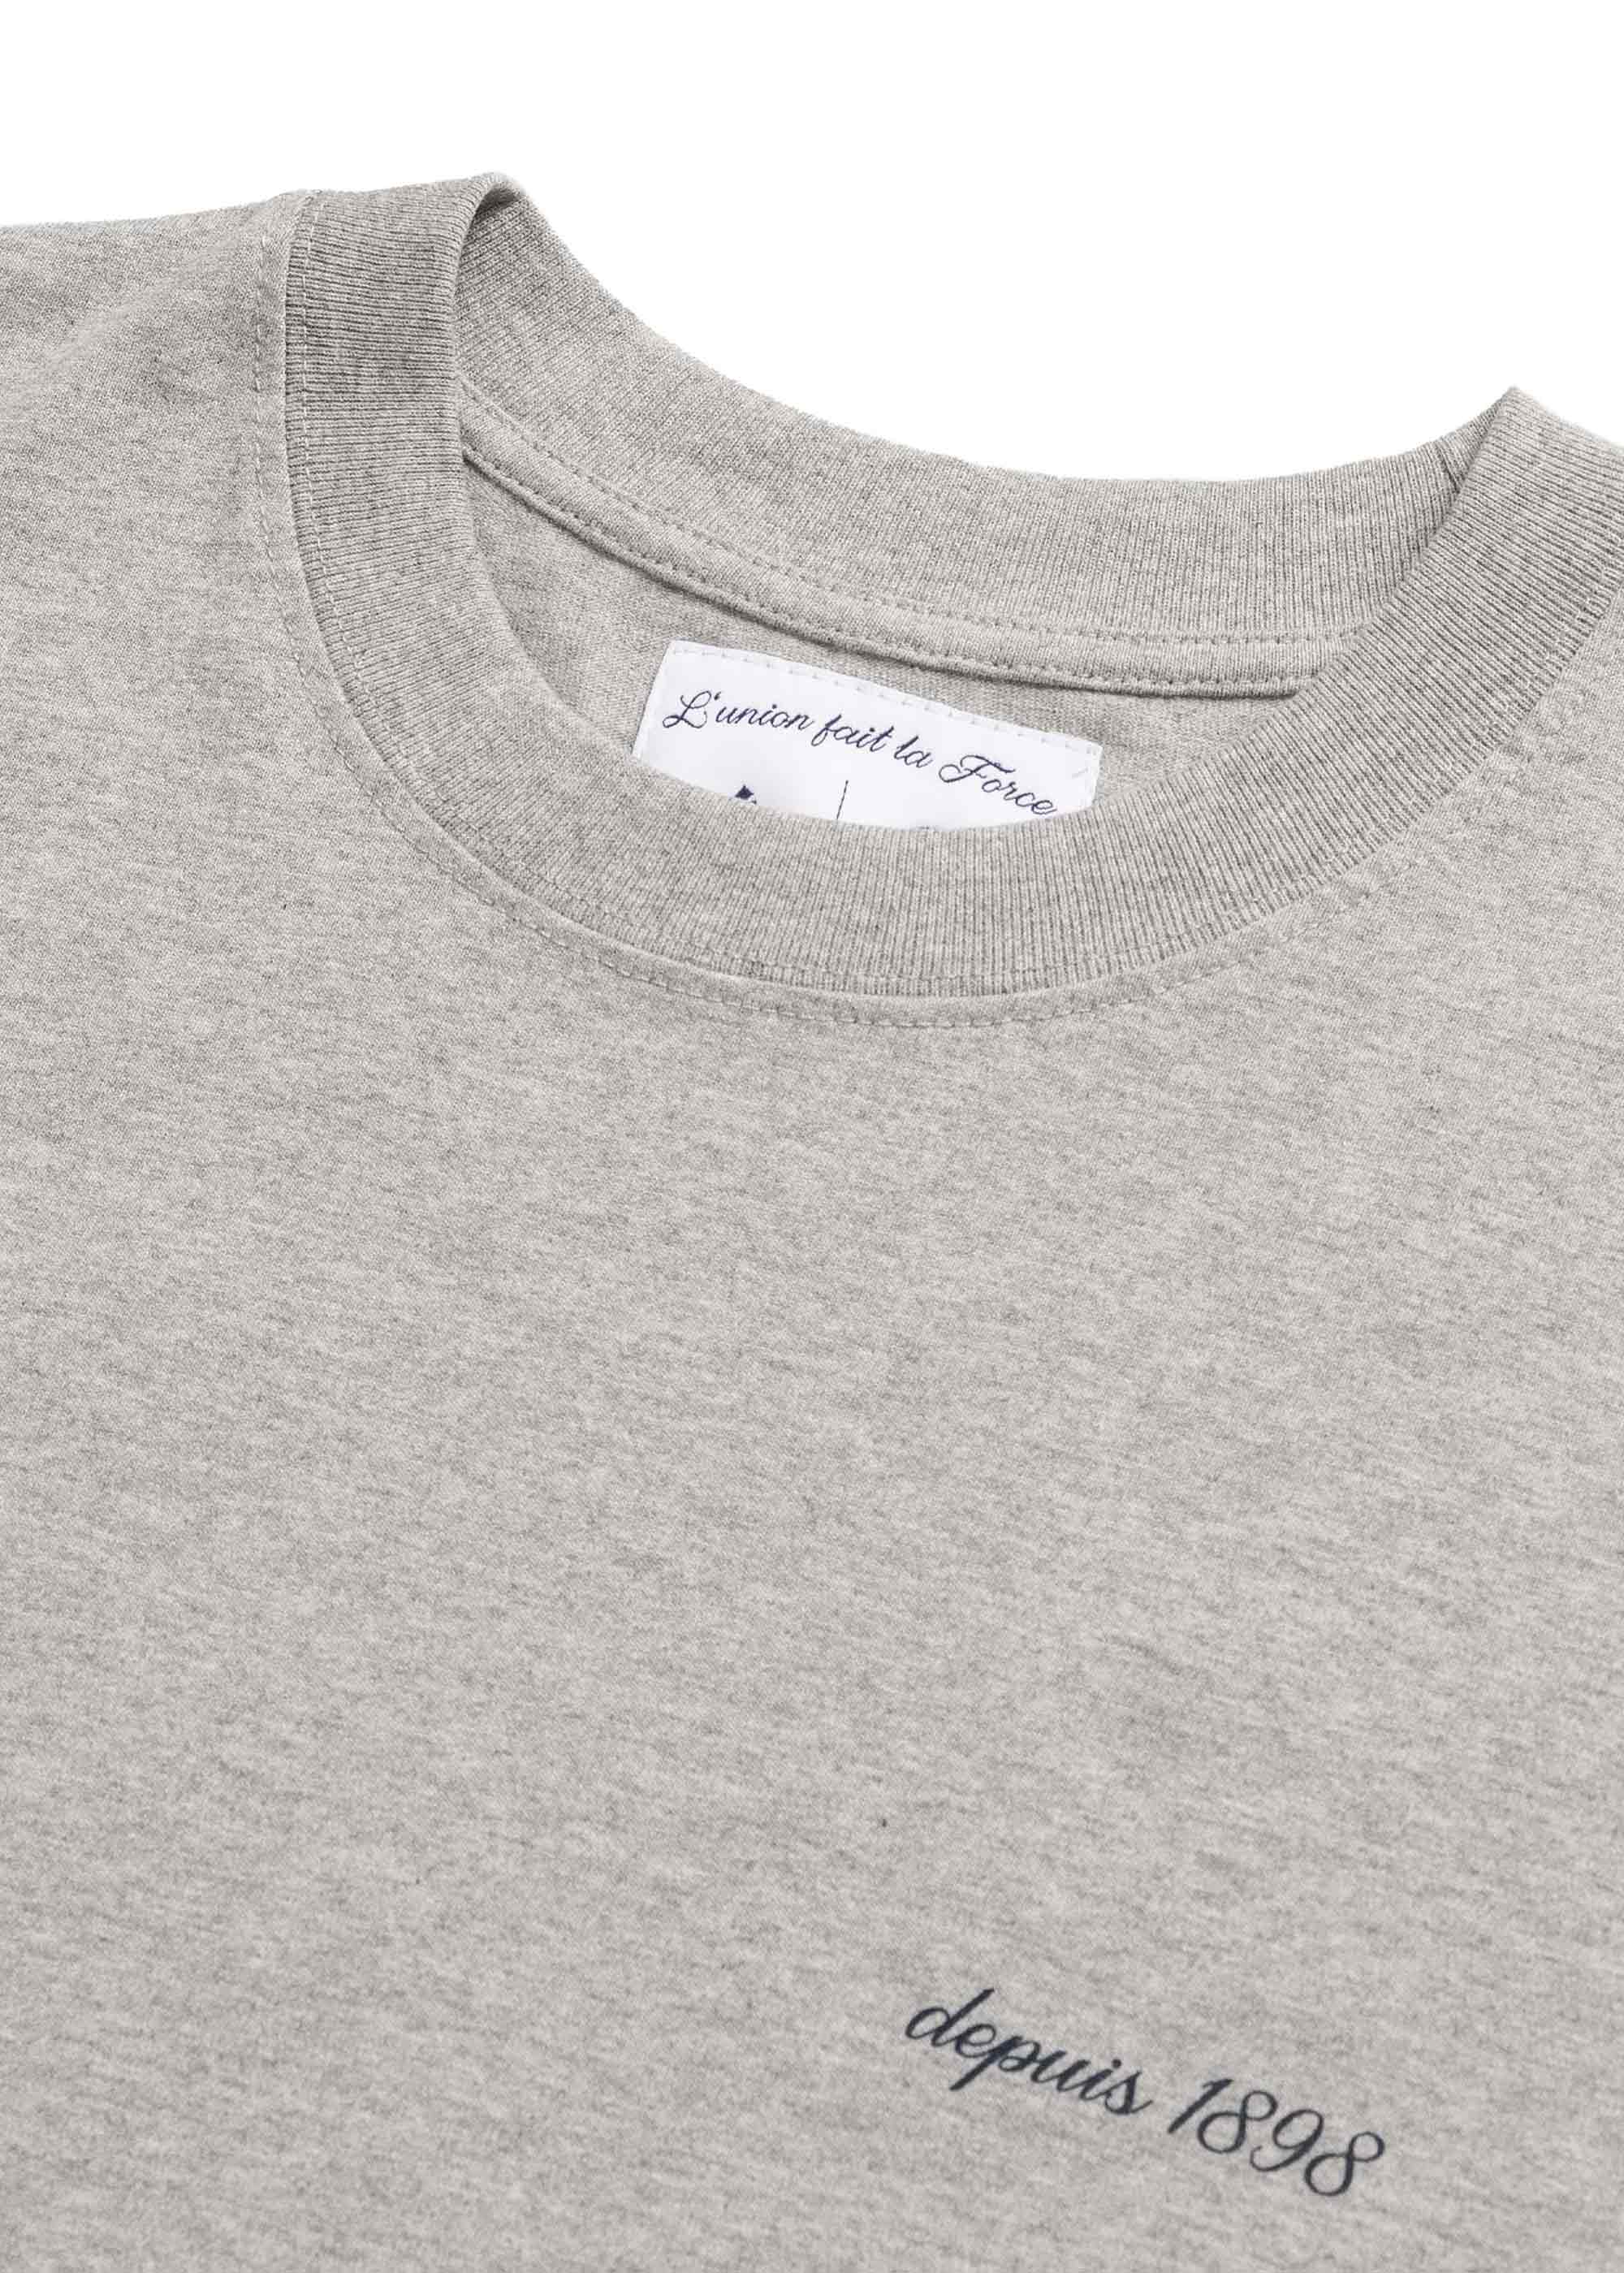 Asphaltgold x SV Darmstadt Le Lis T-Shirt (Grey Melange)